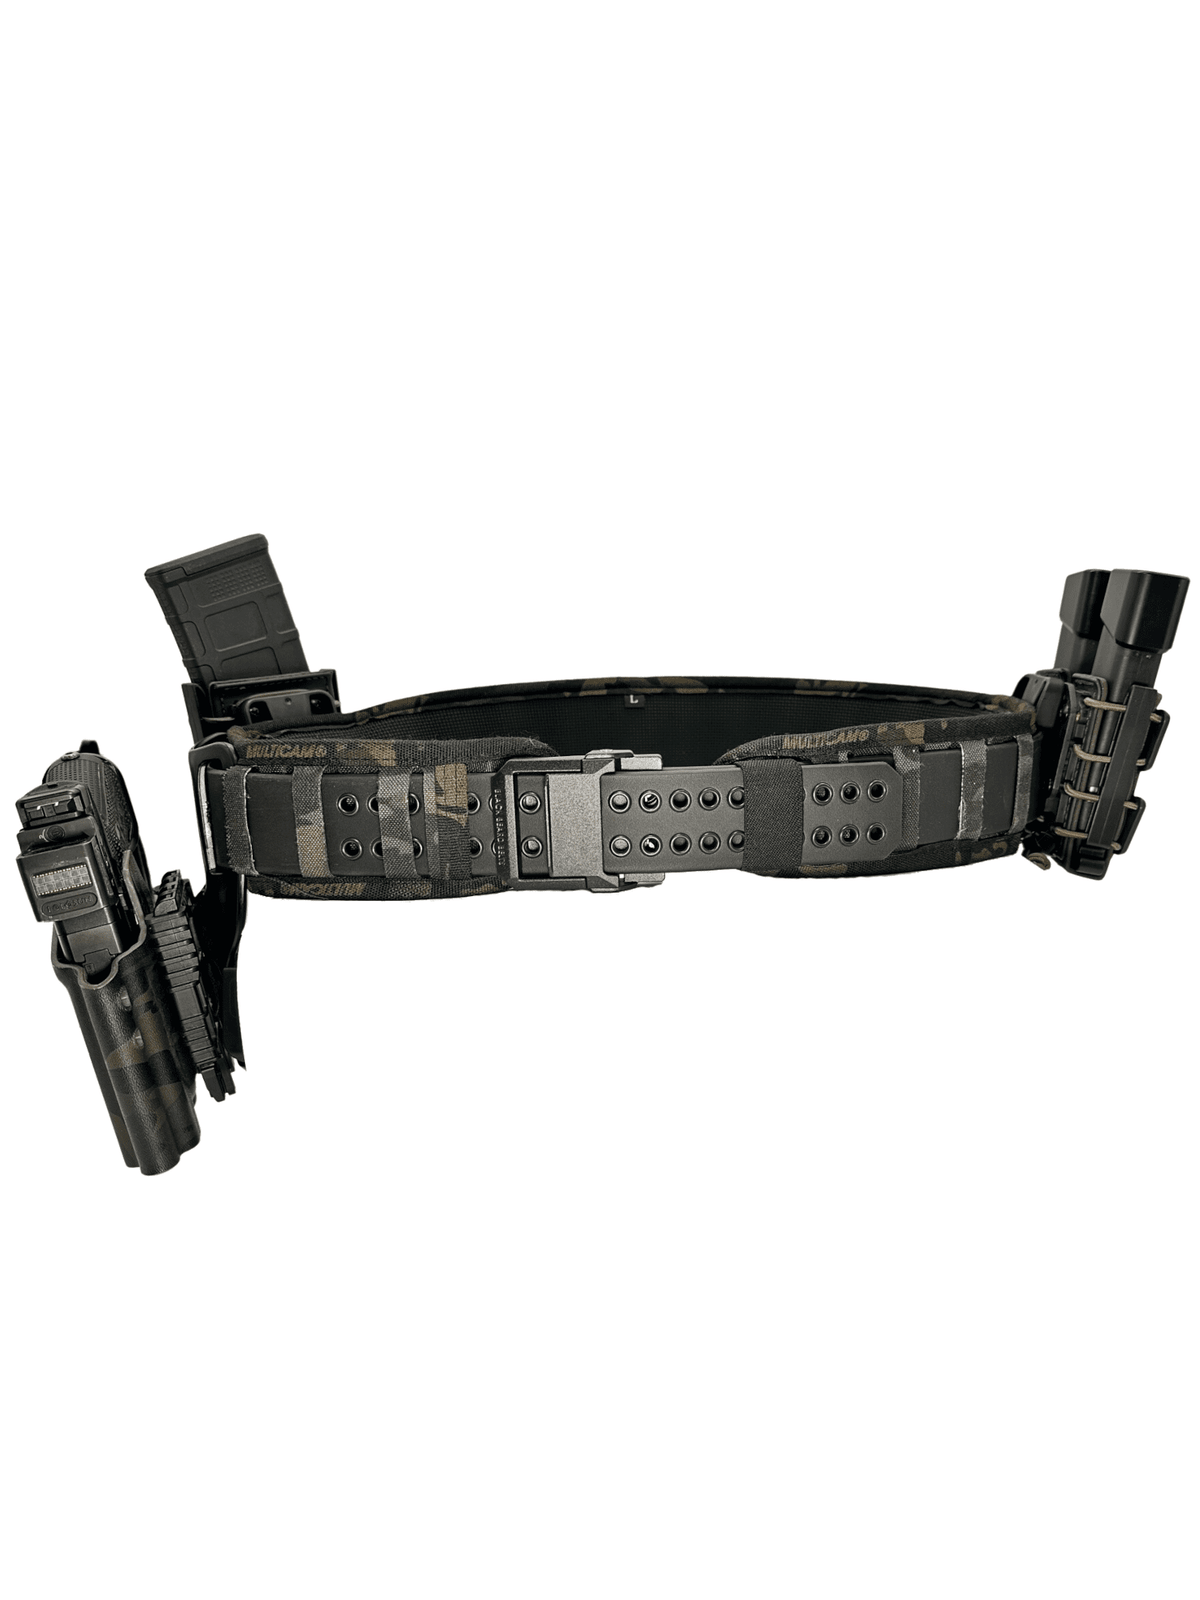 commando gun belt - 2